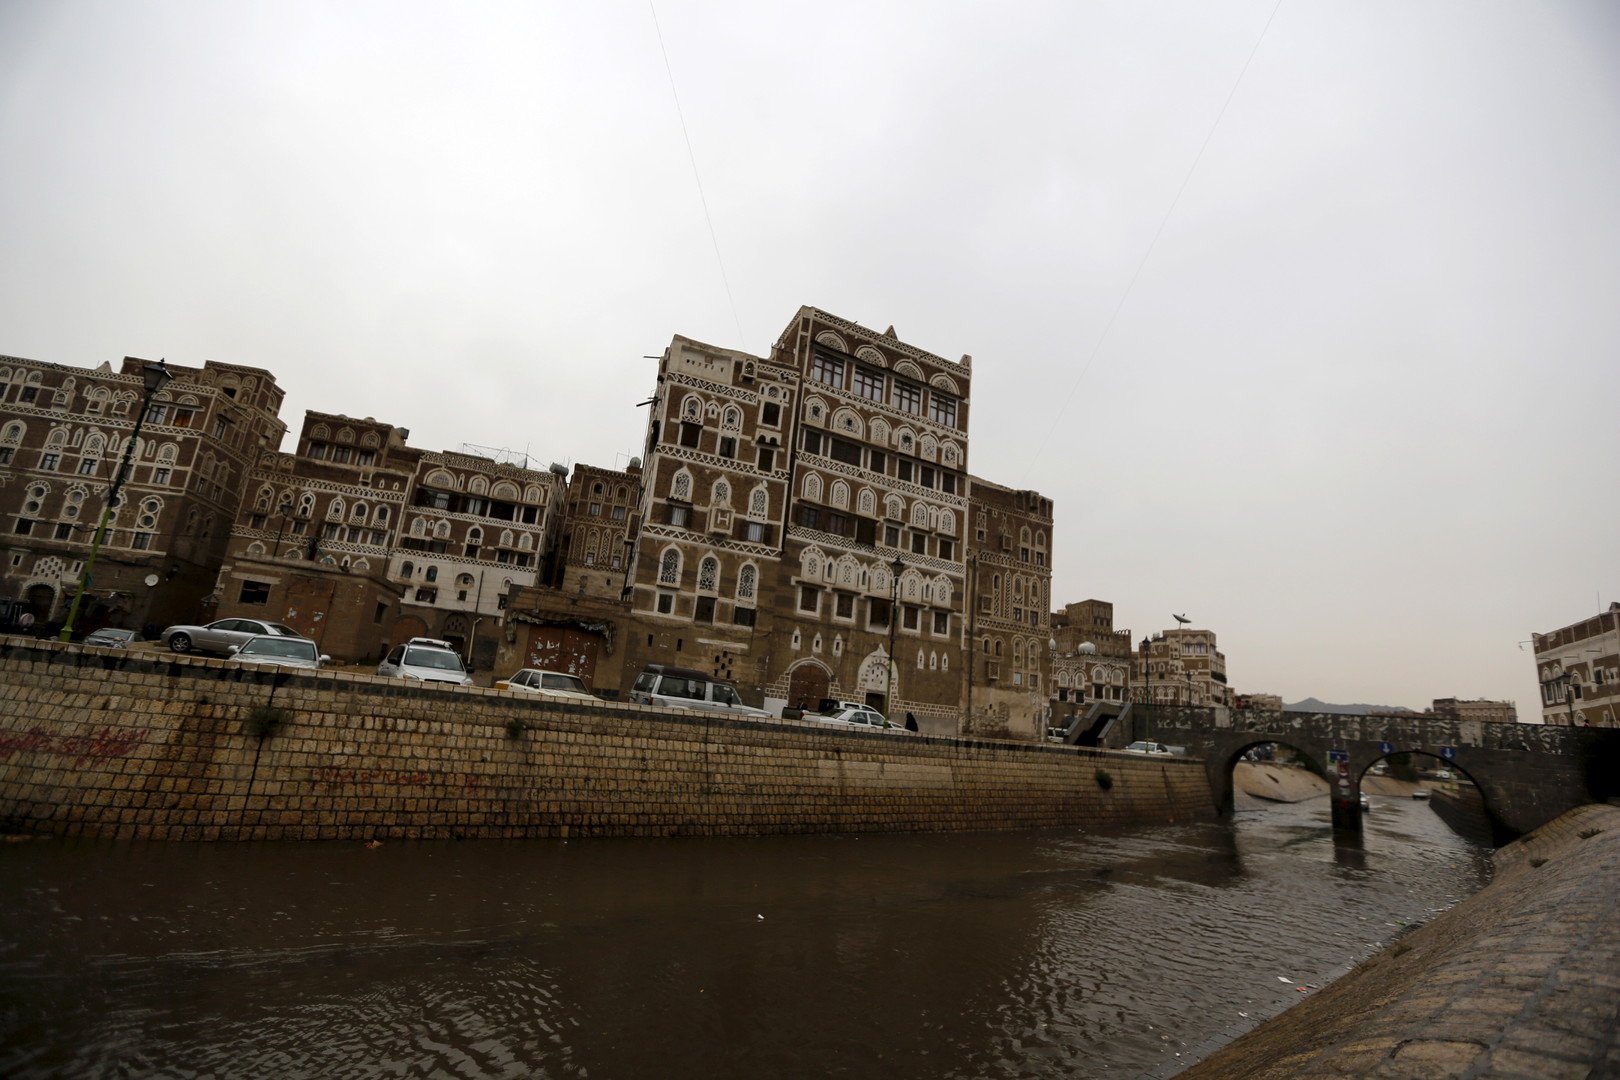 مواجهات عنيفة في جنوب اليمن.. واستعداد لخوض معركة صنعاء